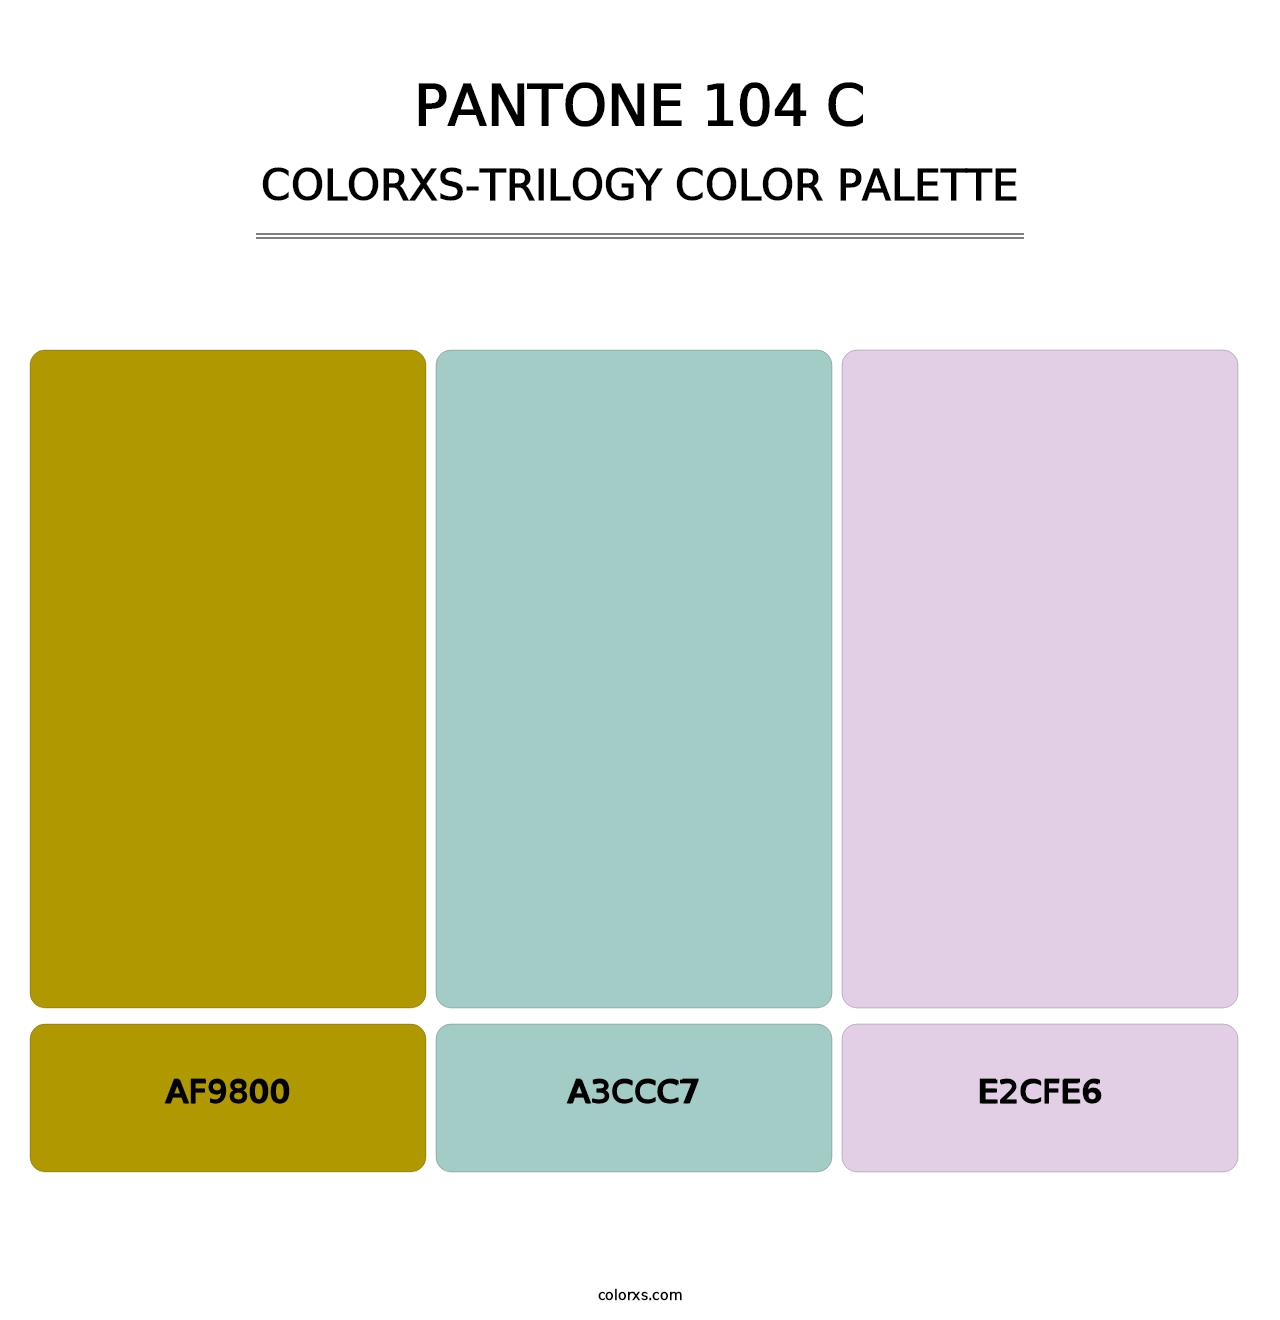 PANTONE 104 C - Colorxs Trilogy Palette